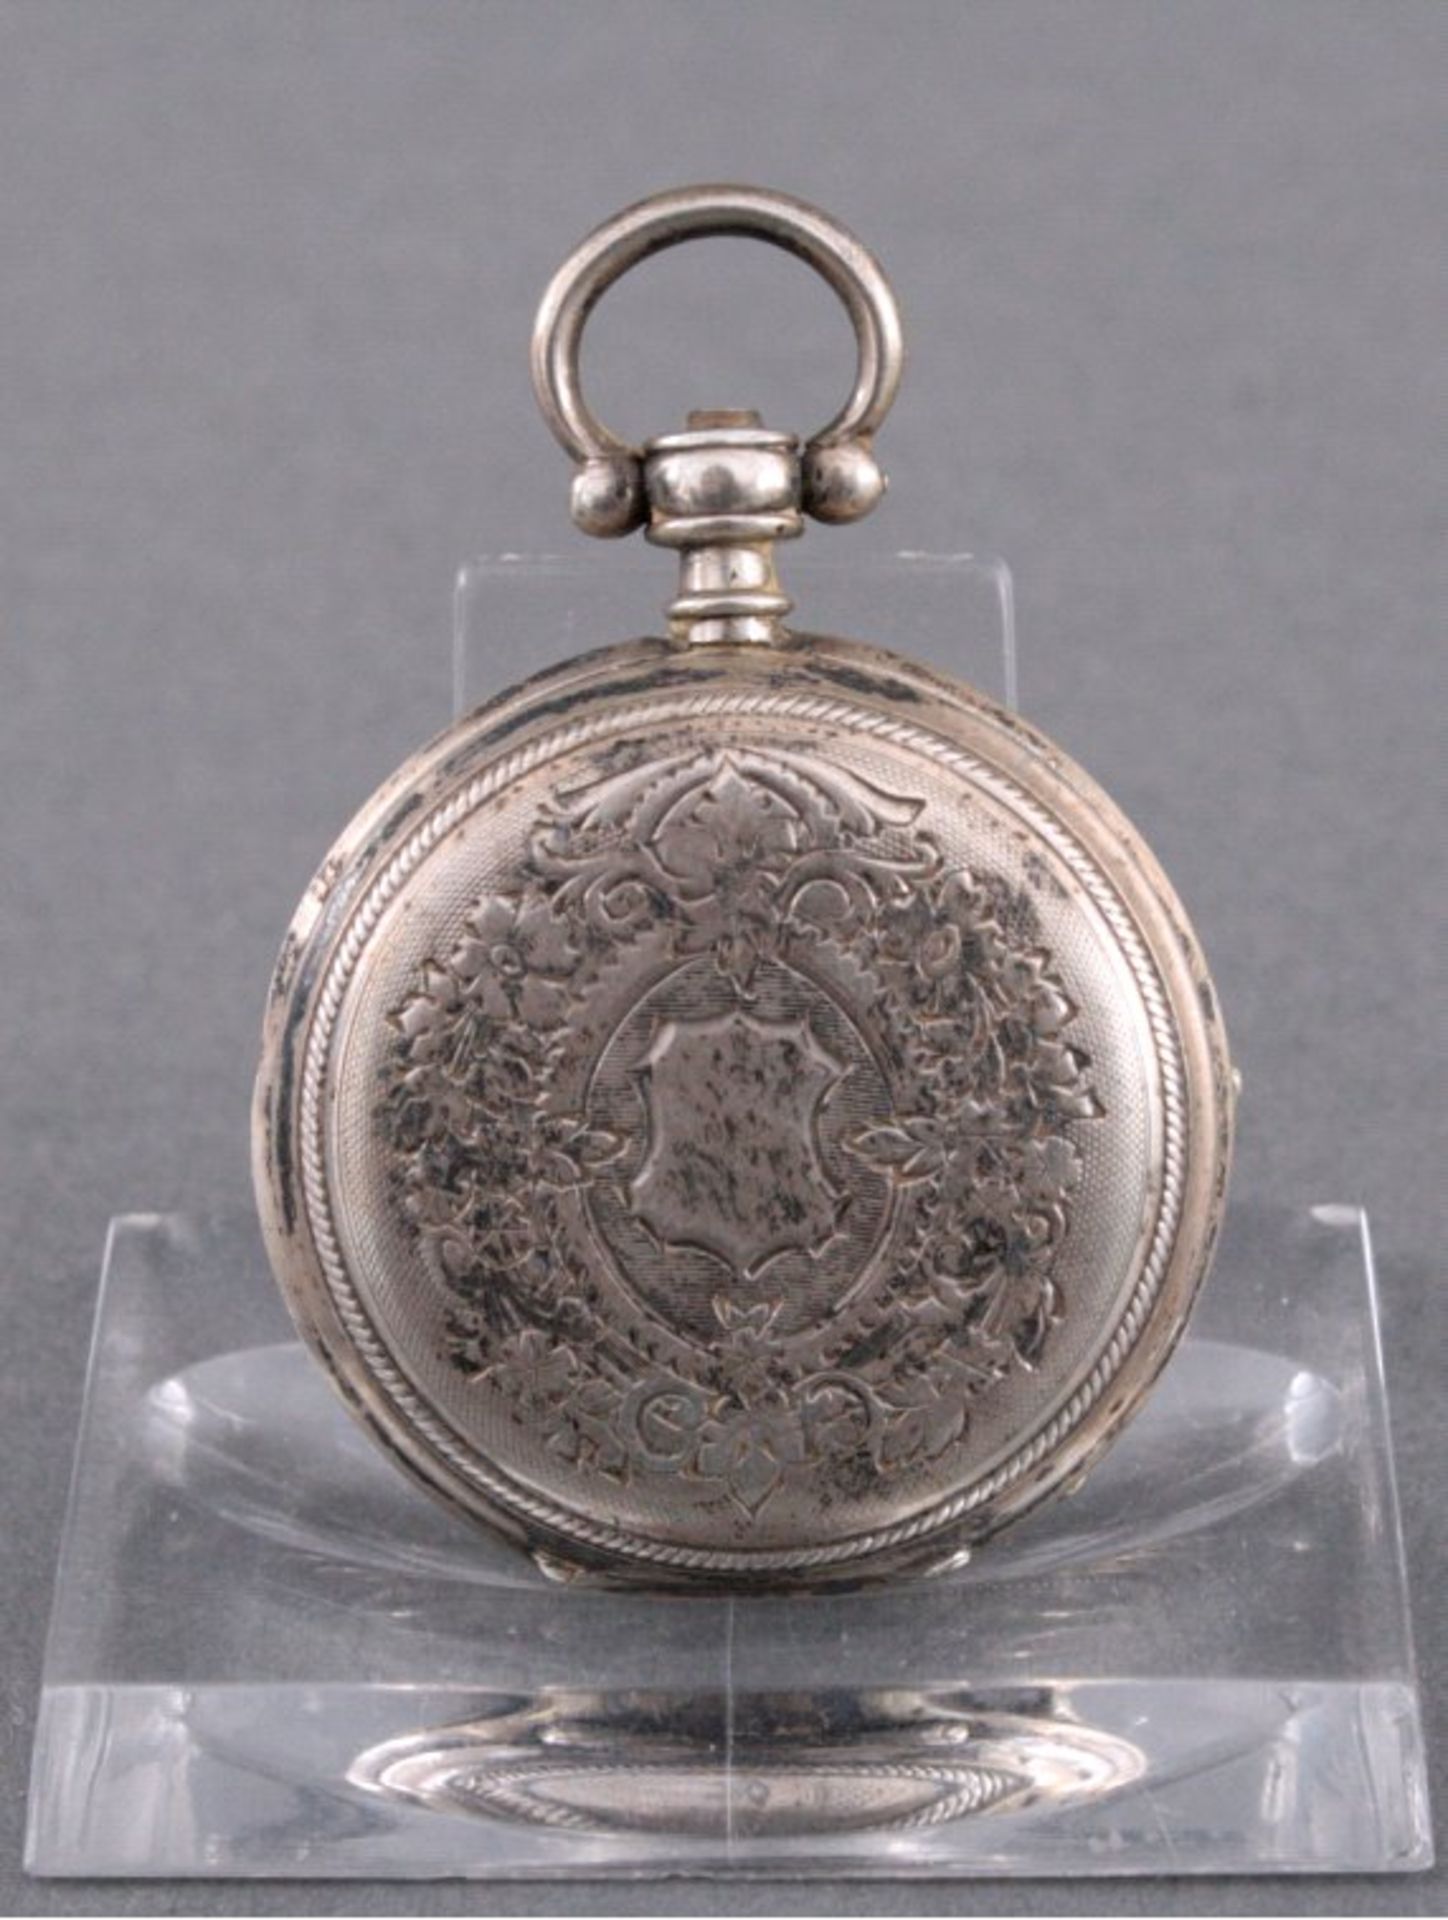 Silberne Damentaschenuhr, 19. Jh.Reliefierter Uhrendeckel, innen mit Punze A8L und Nr. 1144, - Bild 3 aus 4